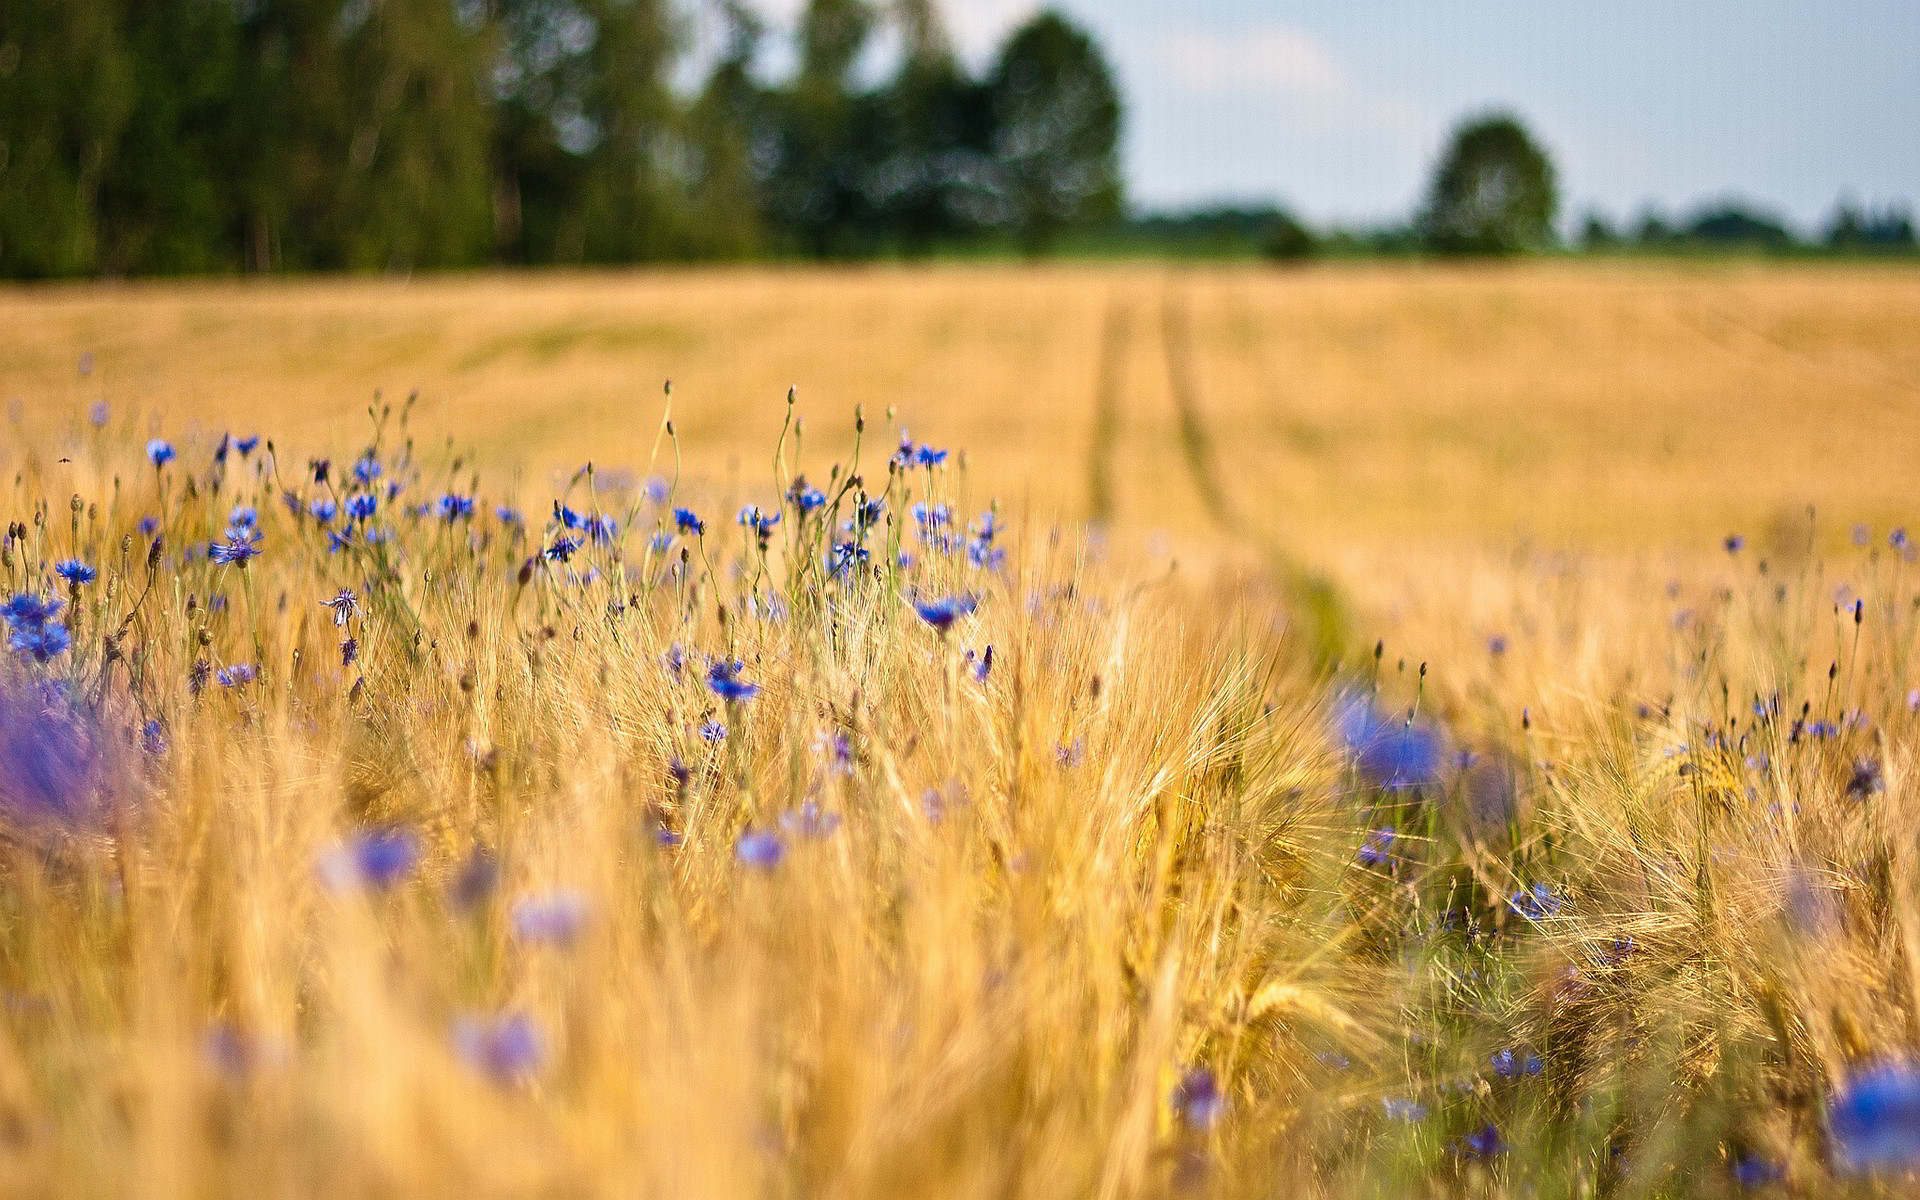 Macro blue flowers in the wheat field - HD wallpaper